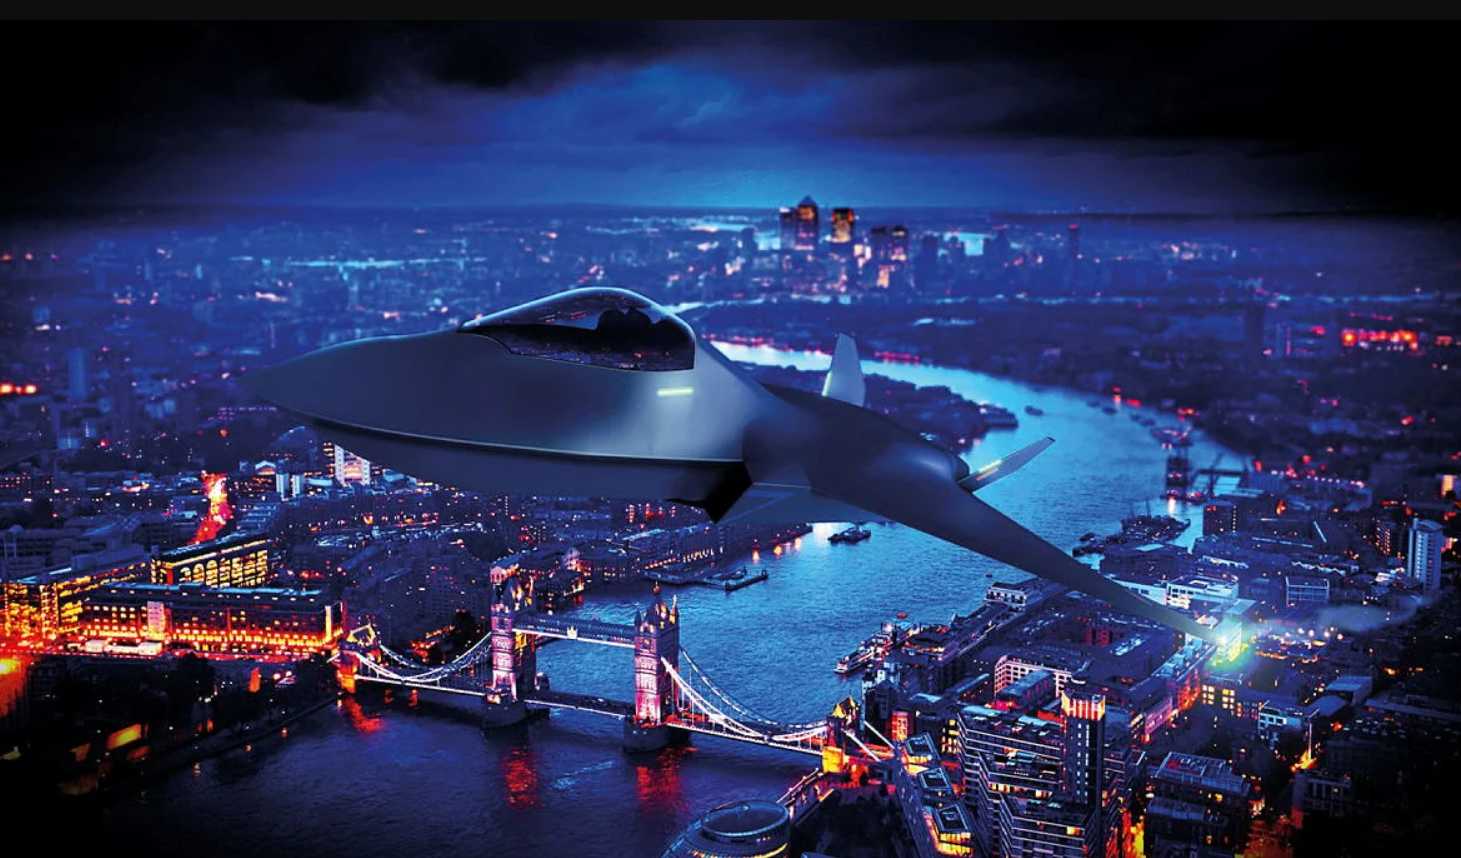 Tempest Future Combat Air System concept